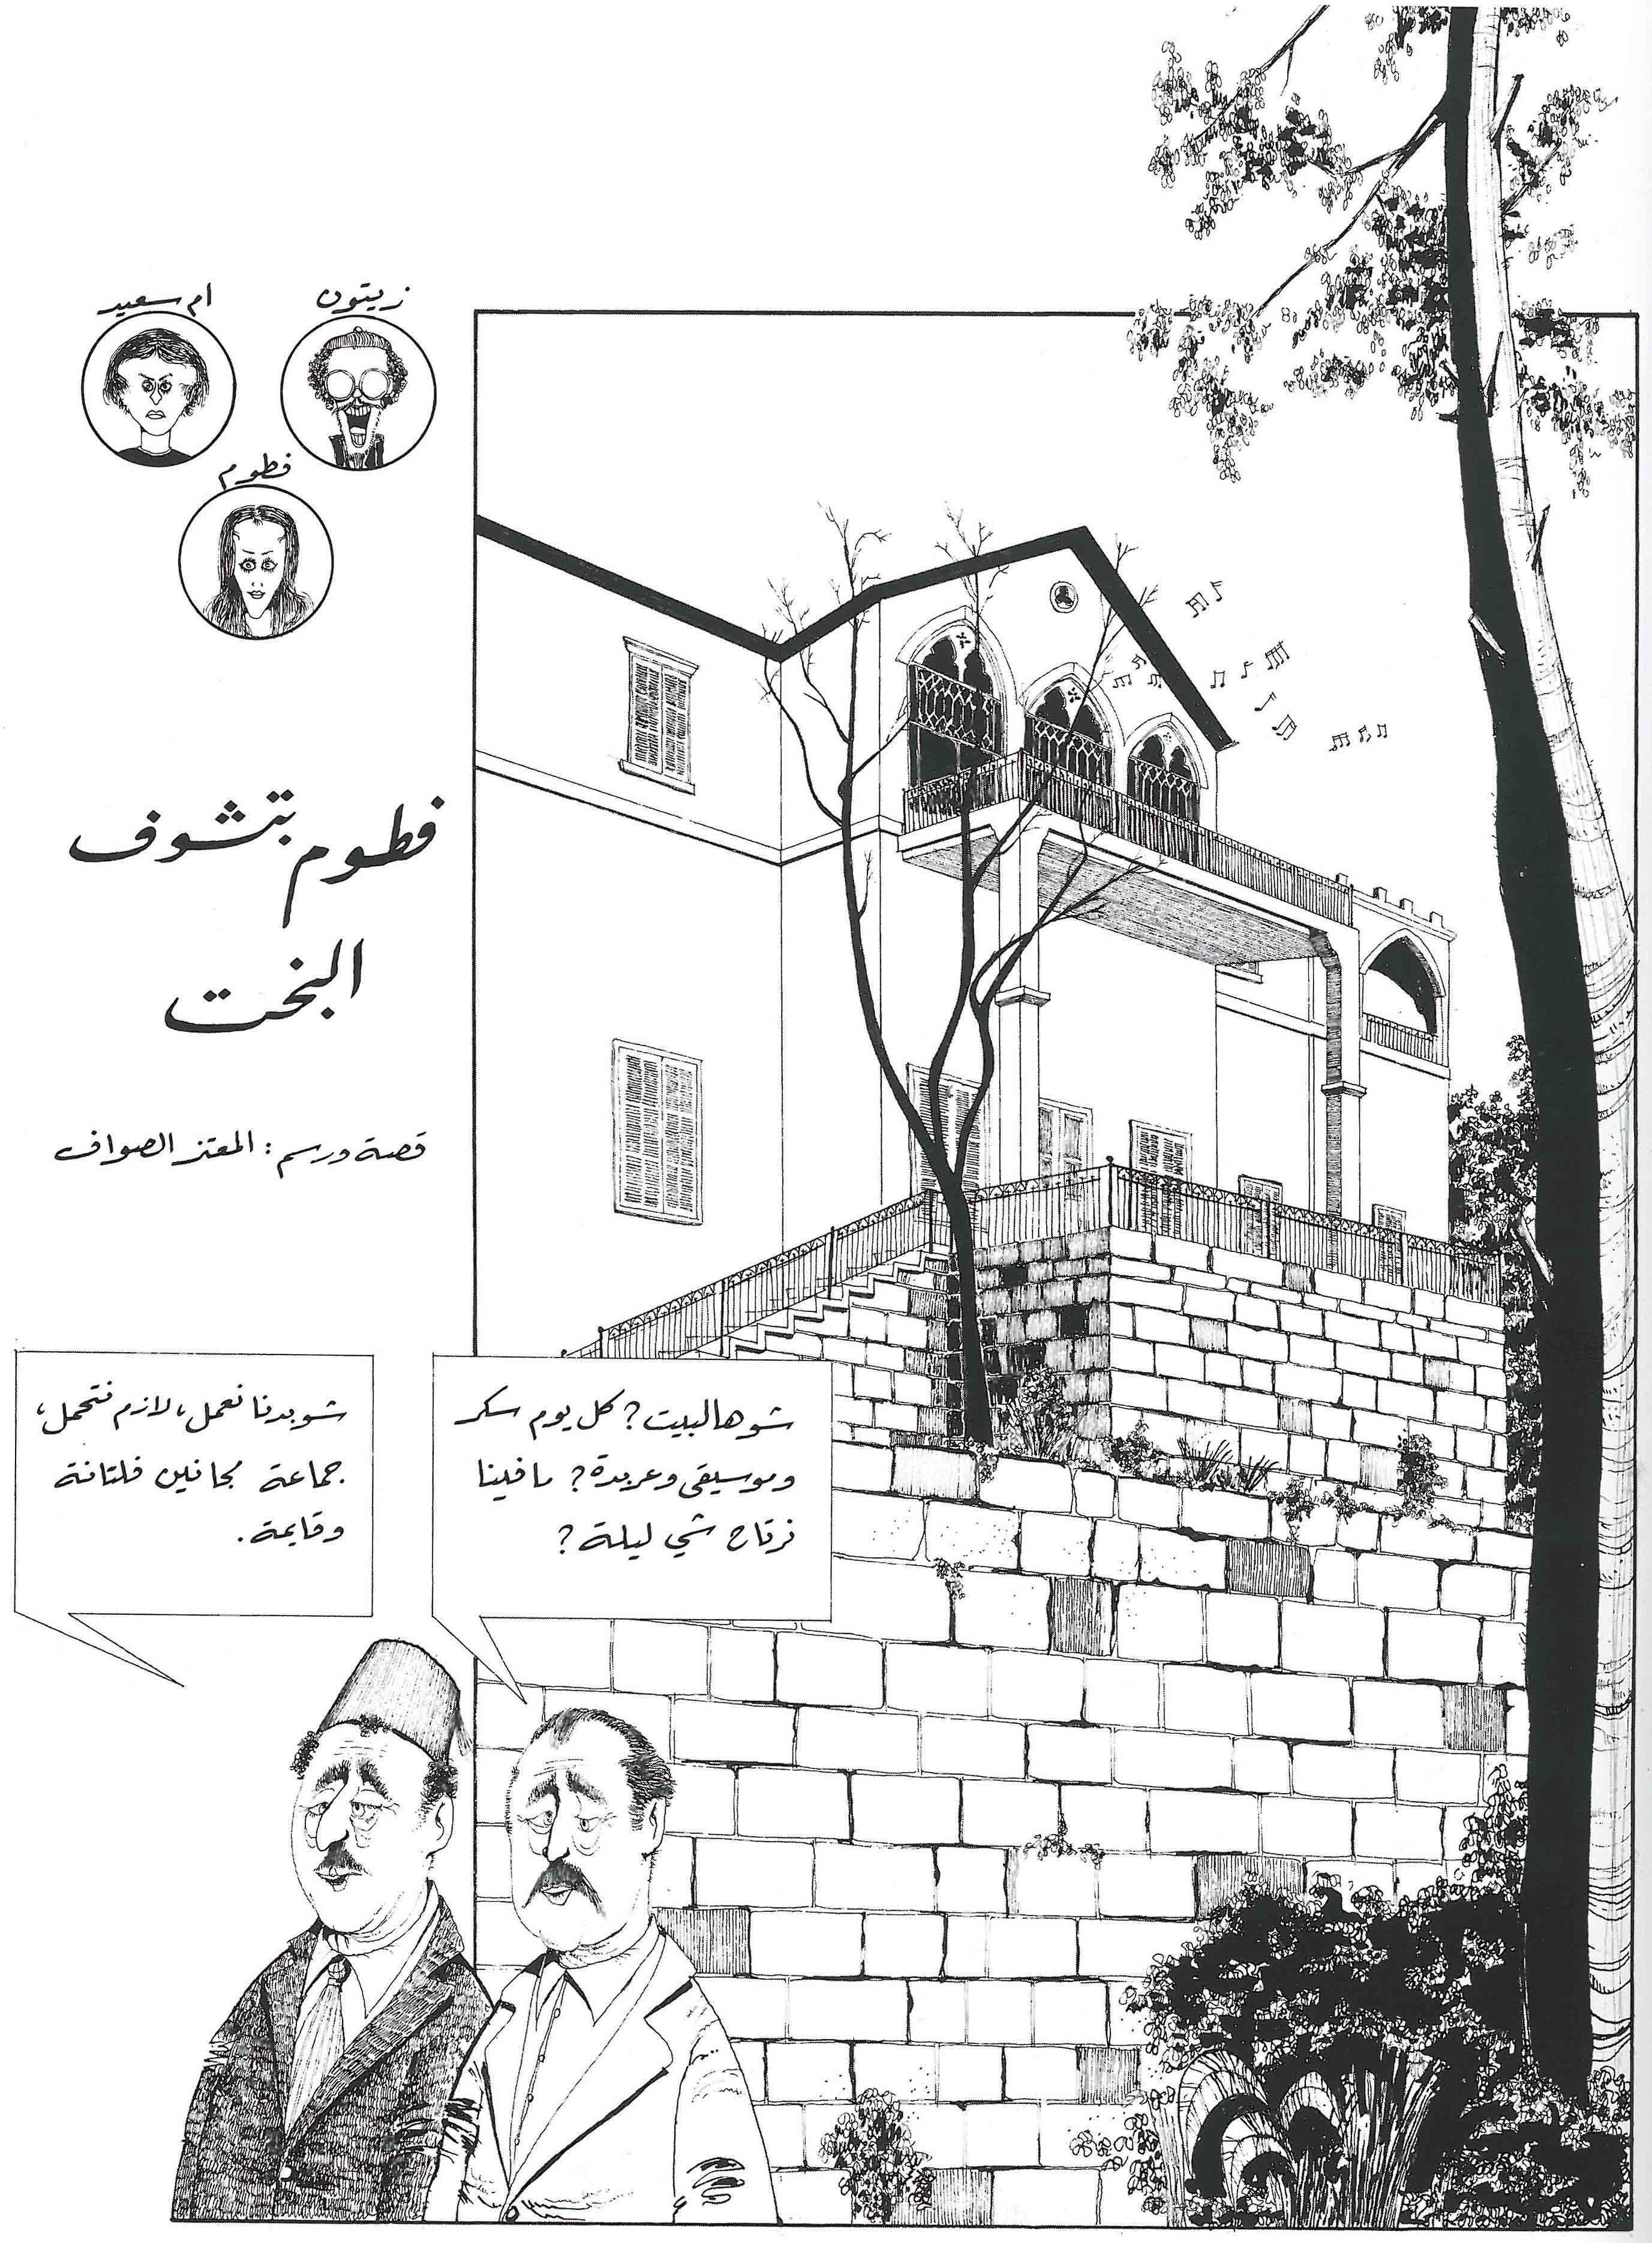 works_on_comics_in_Lebanon-1.jpg